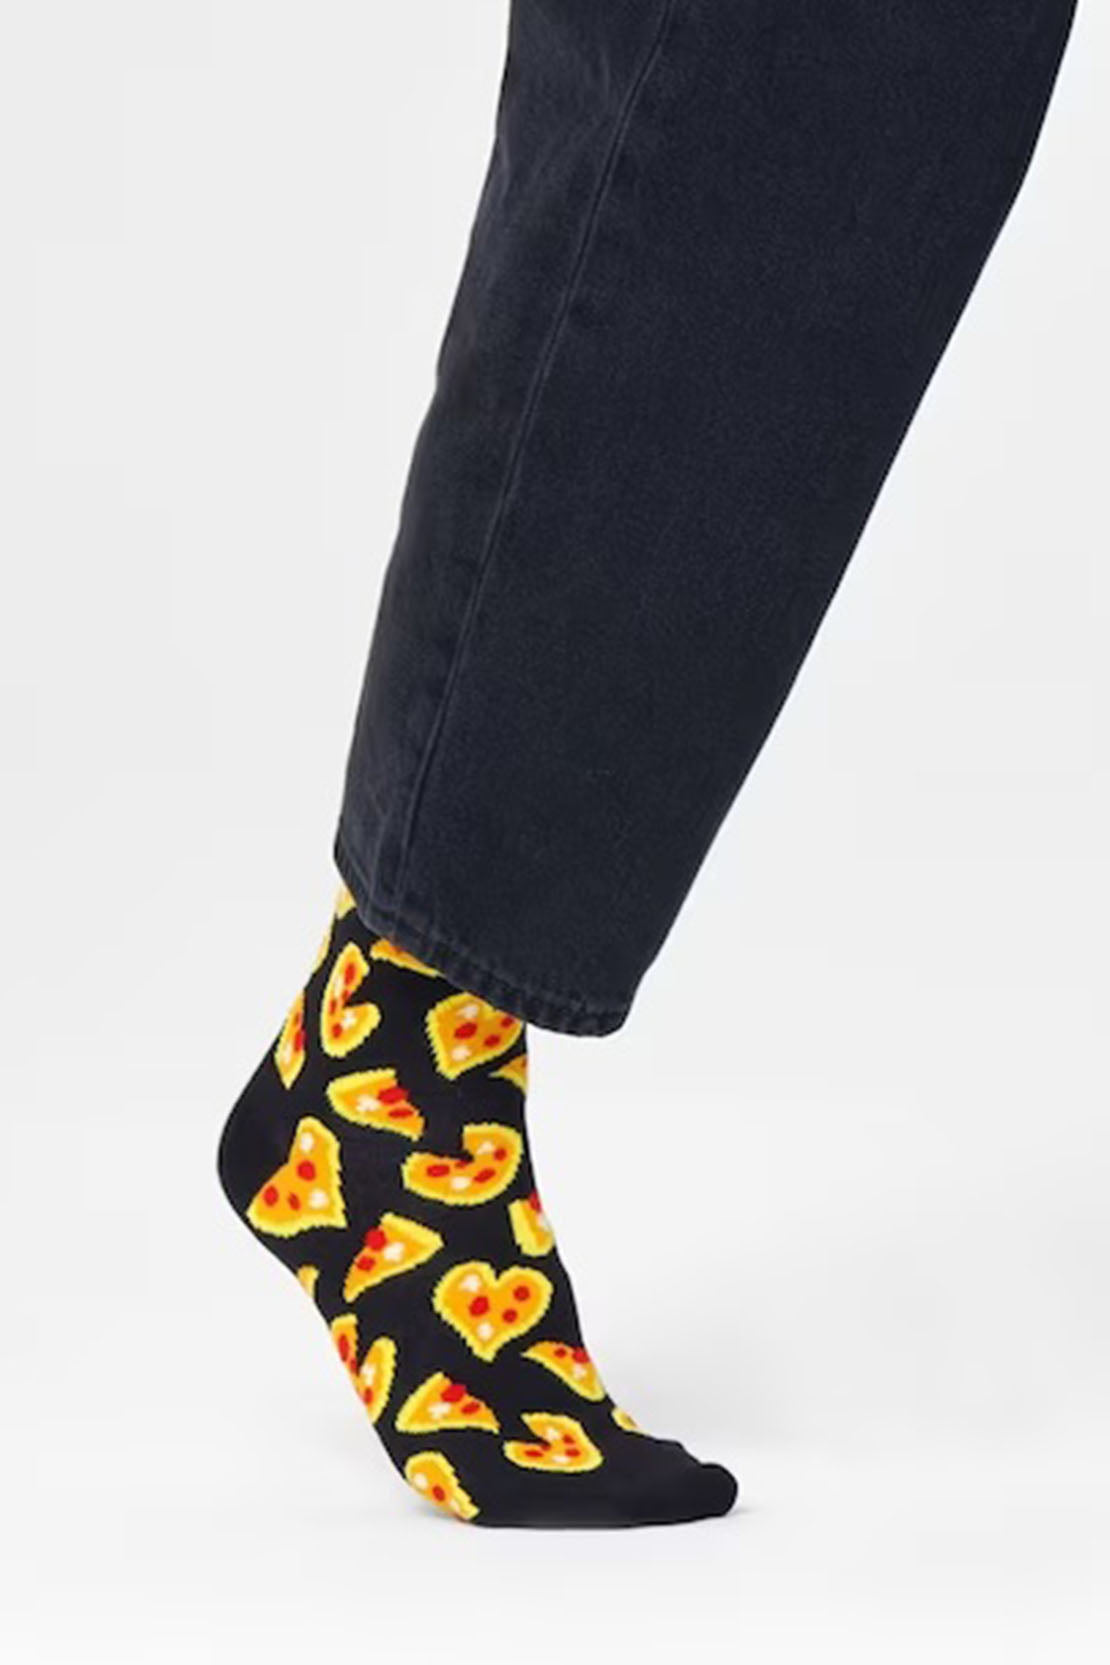 HAPPY SOCKS - PIZZA LOVE Socks in Black PLS01-9300